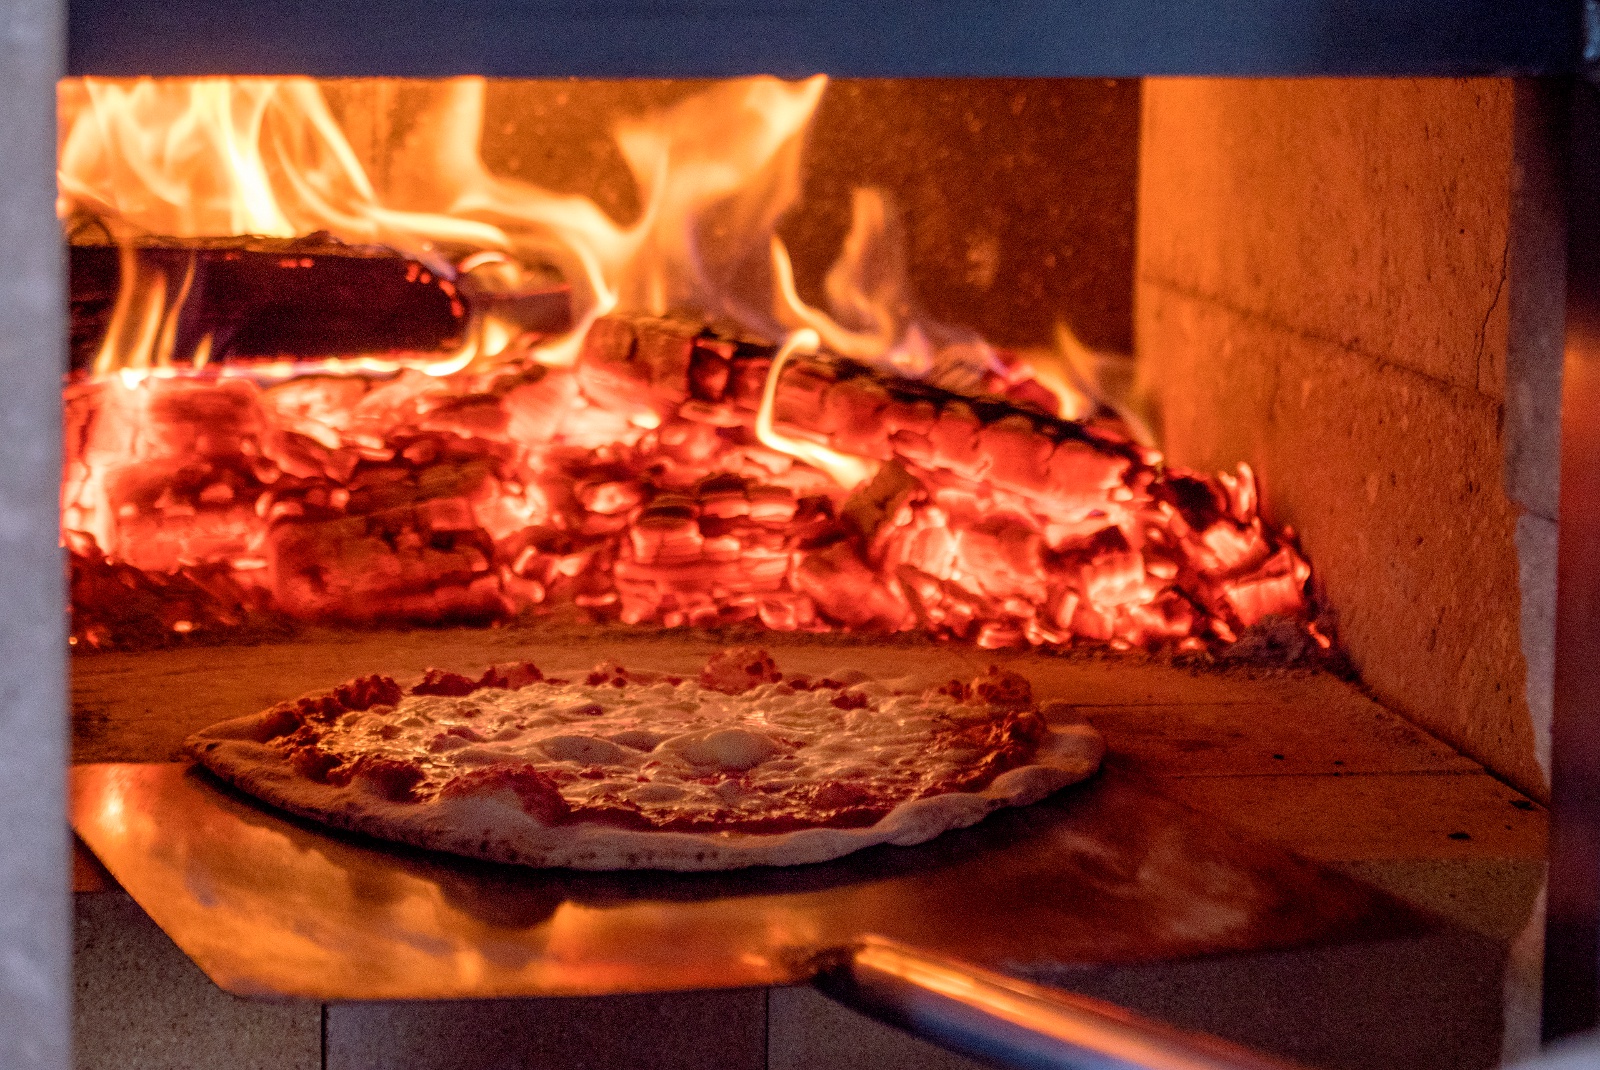 欧州スタイルのピザが1000円以下で!? 北広島市の「石窯焼グラッチェ」